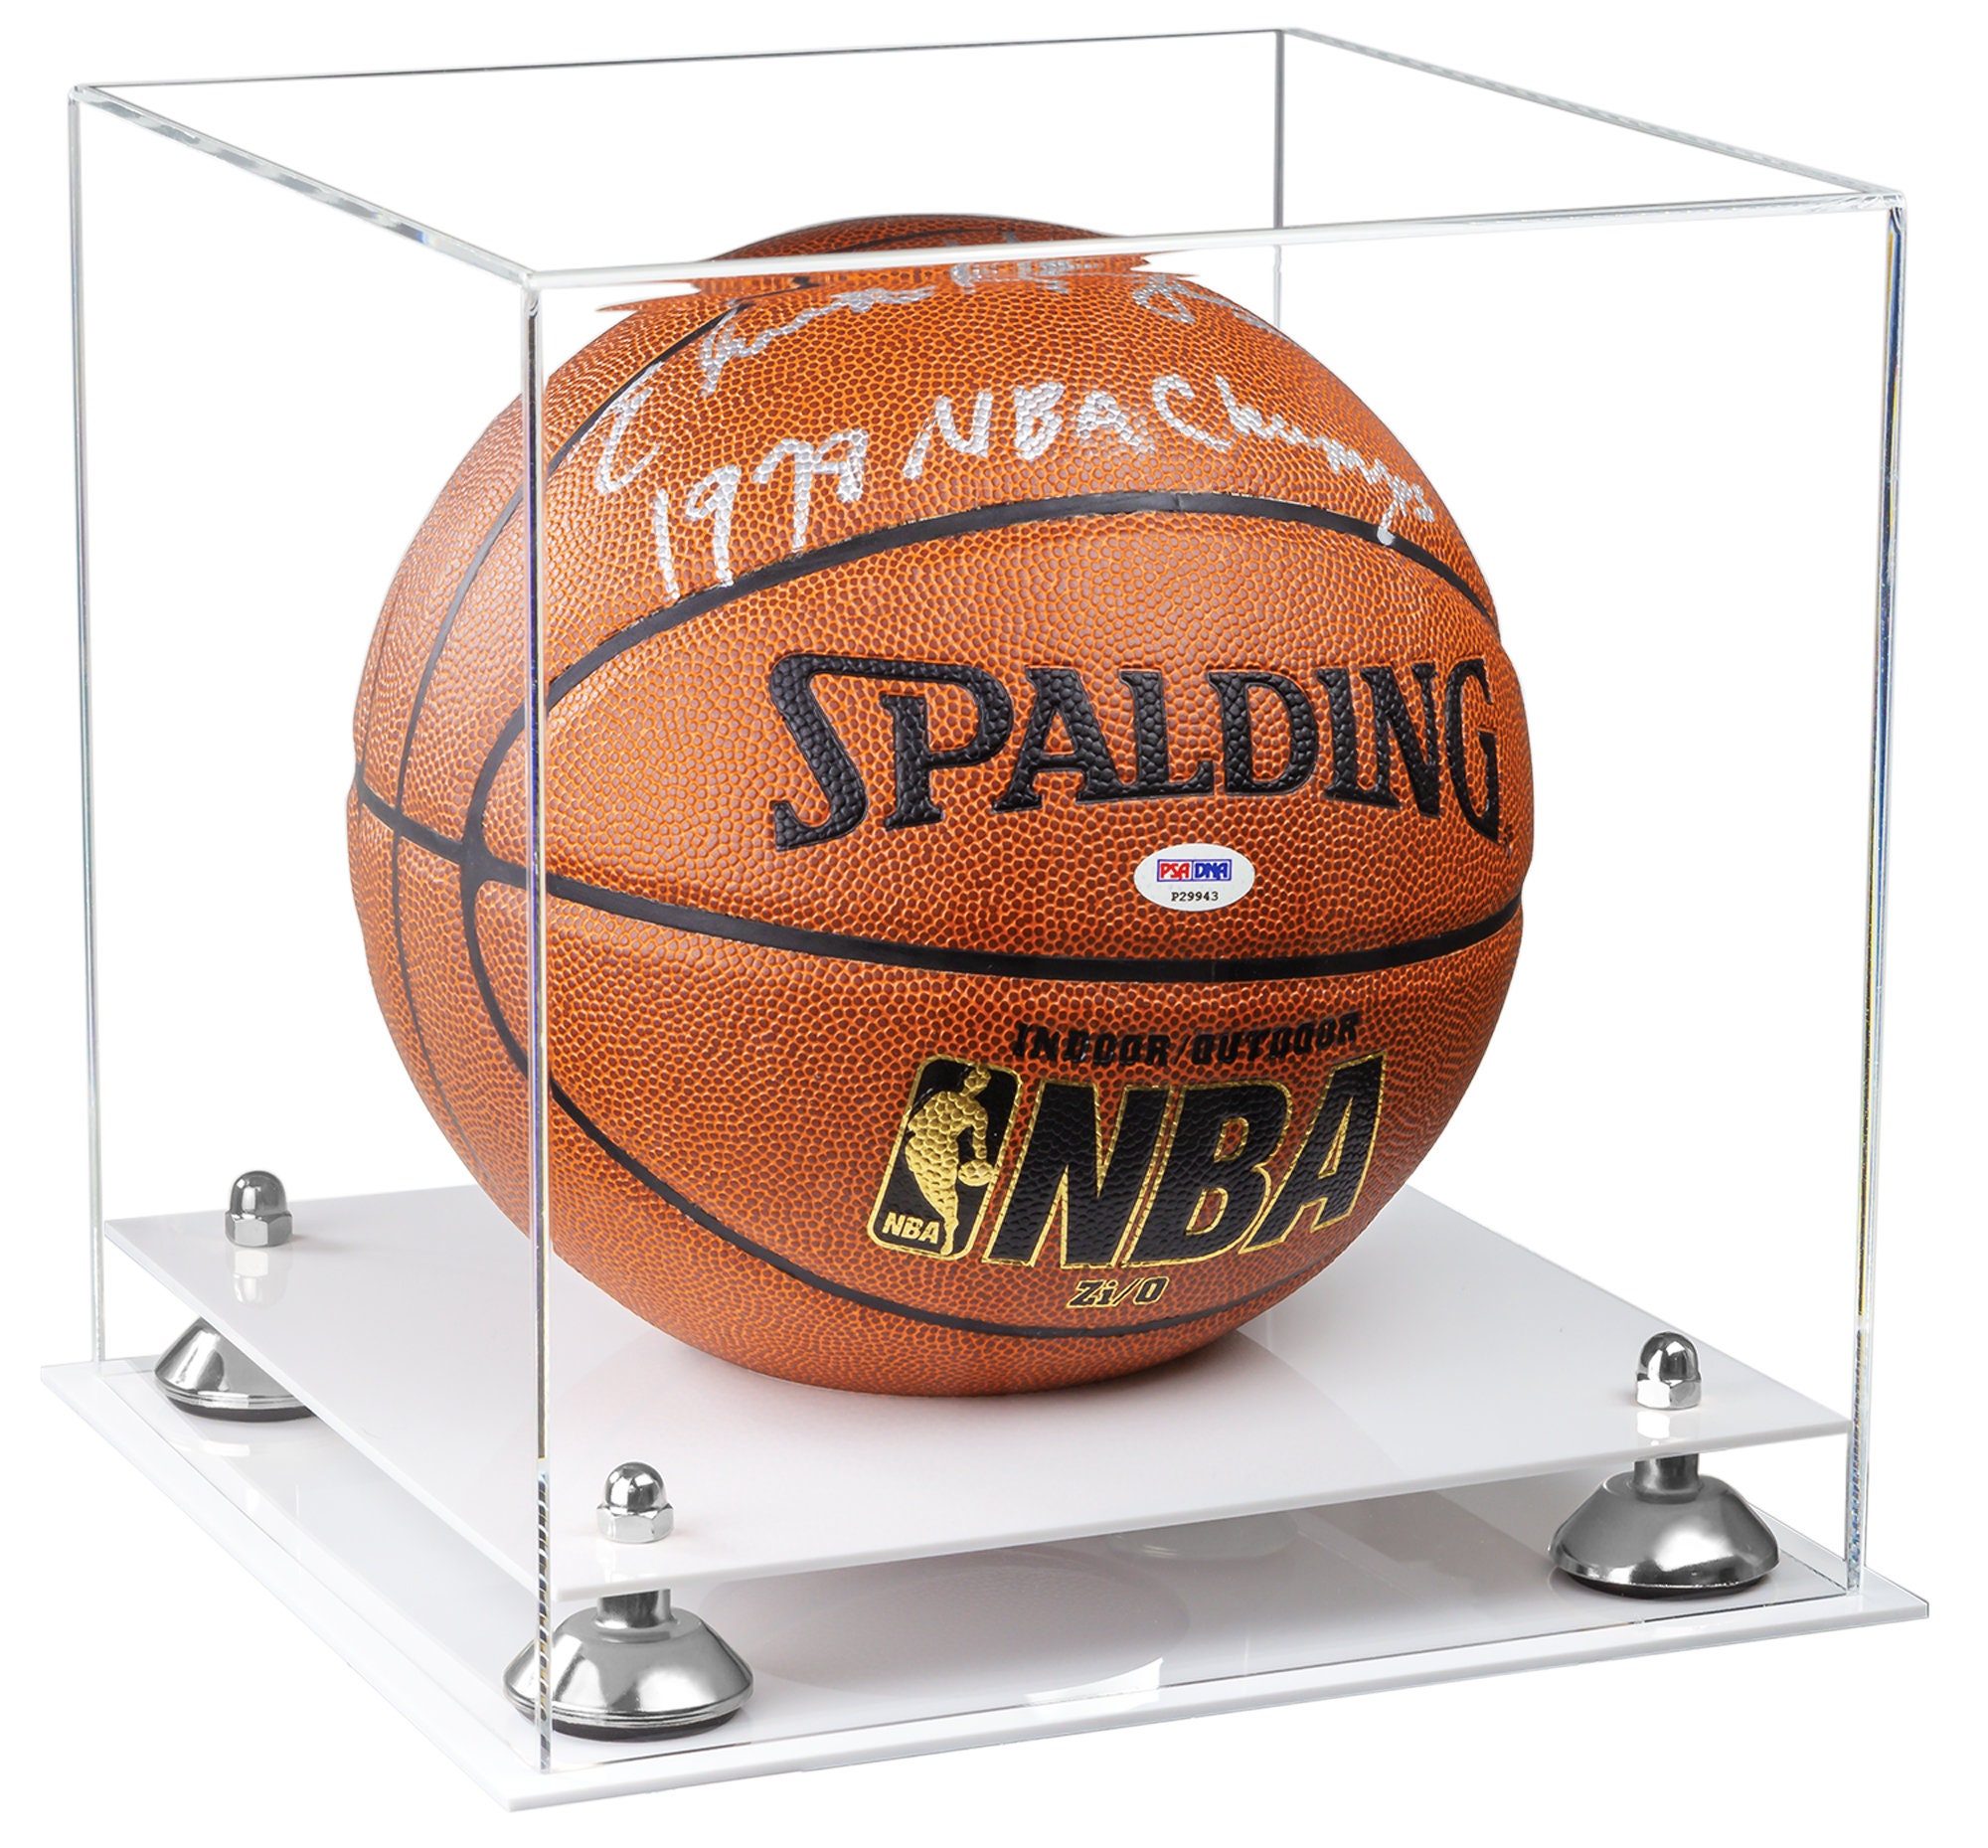 RARE SPALDING GOLD NBA OUTDOOR BASKETBALL BALL SIZE 7 NEW NOS !